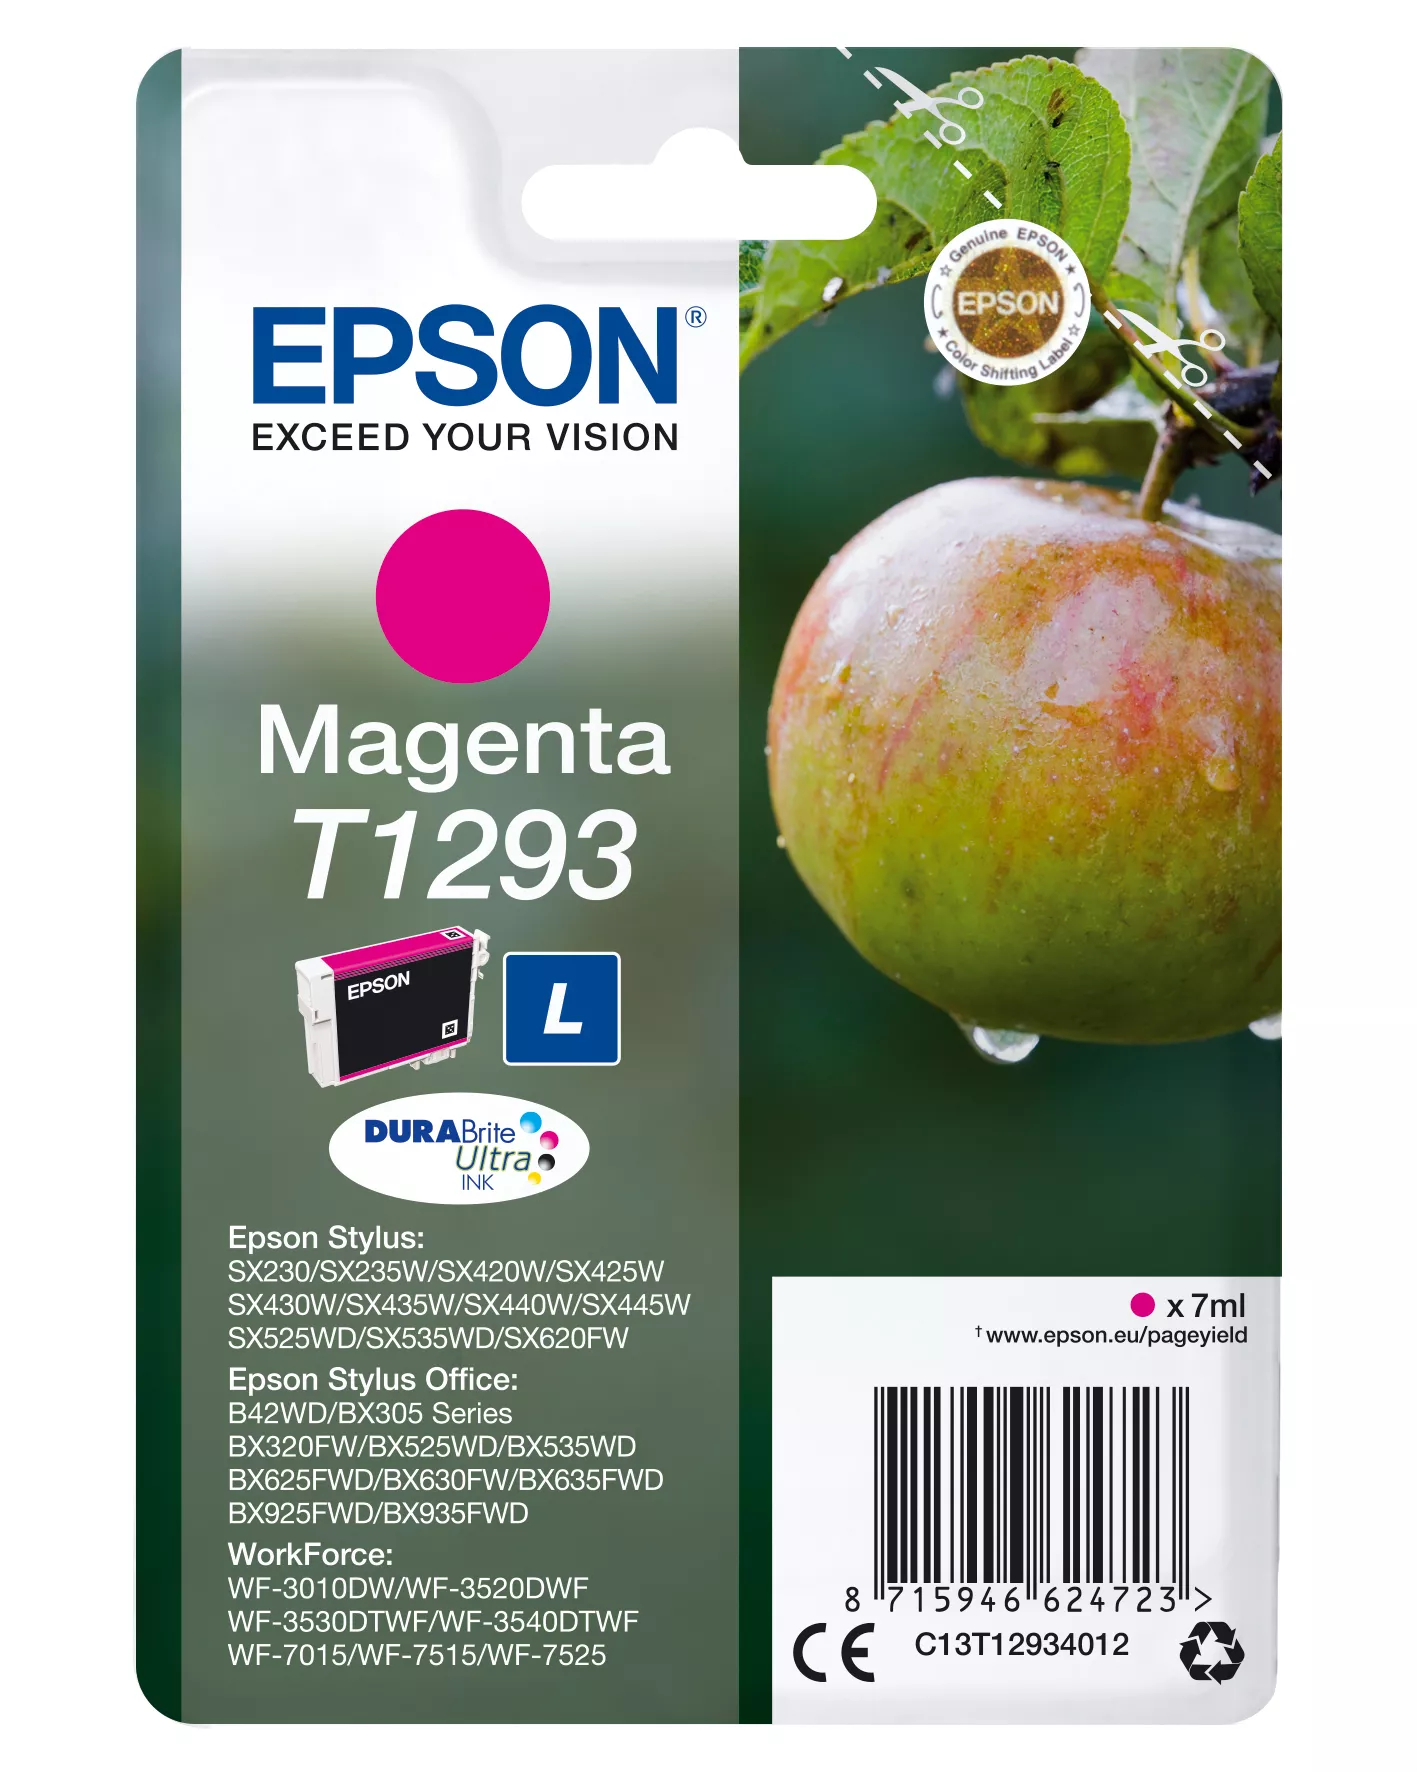 Achat Epson Apple Cartouche "Pomme" - Encre DURABrite Ultra M - 8715946624730